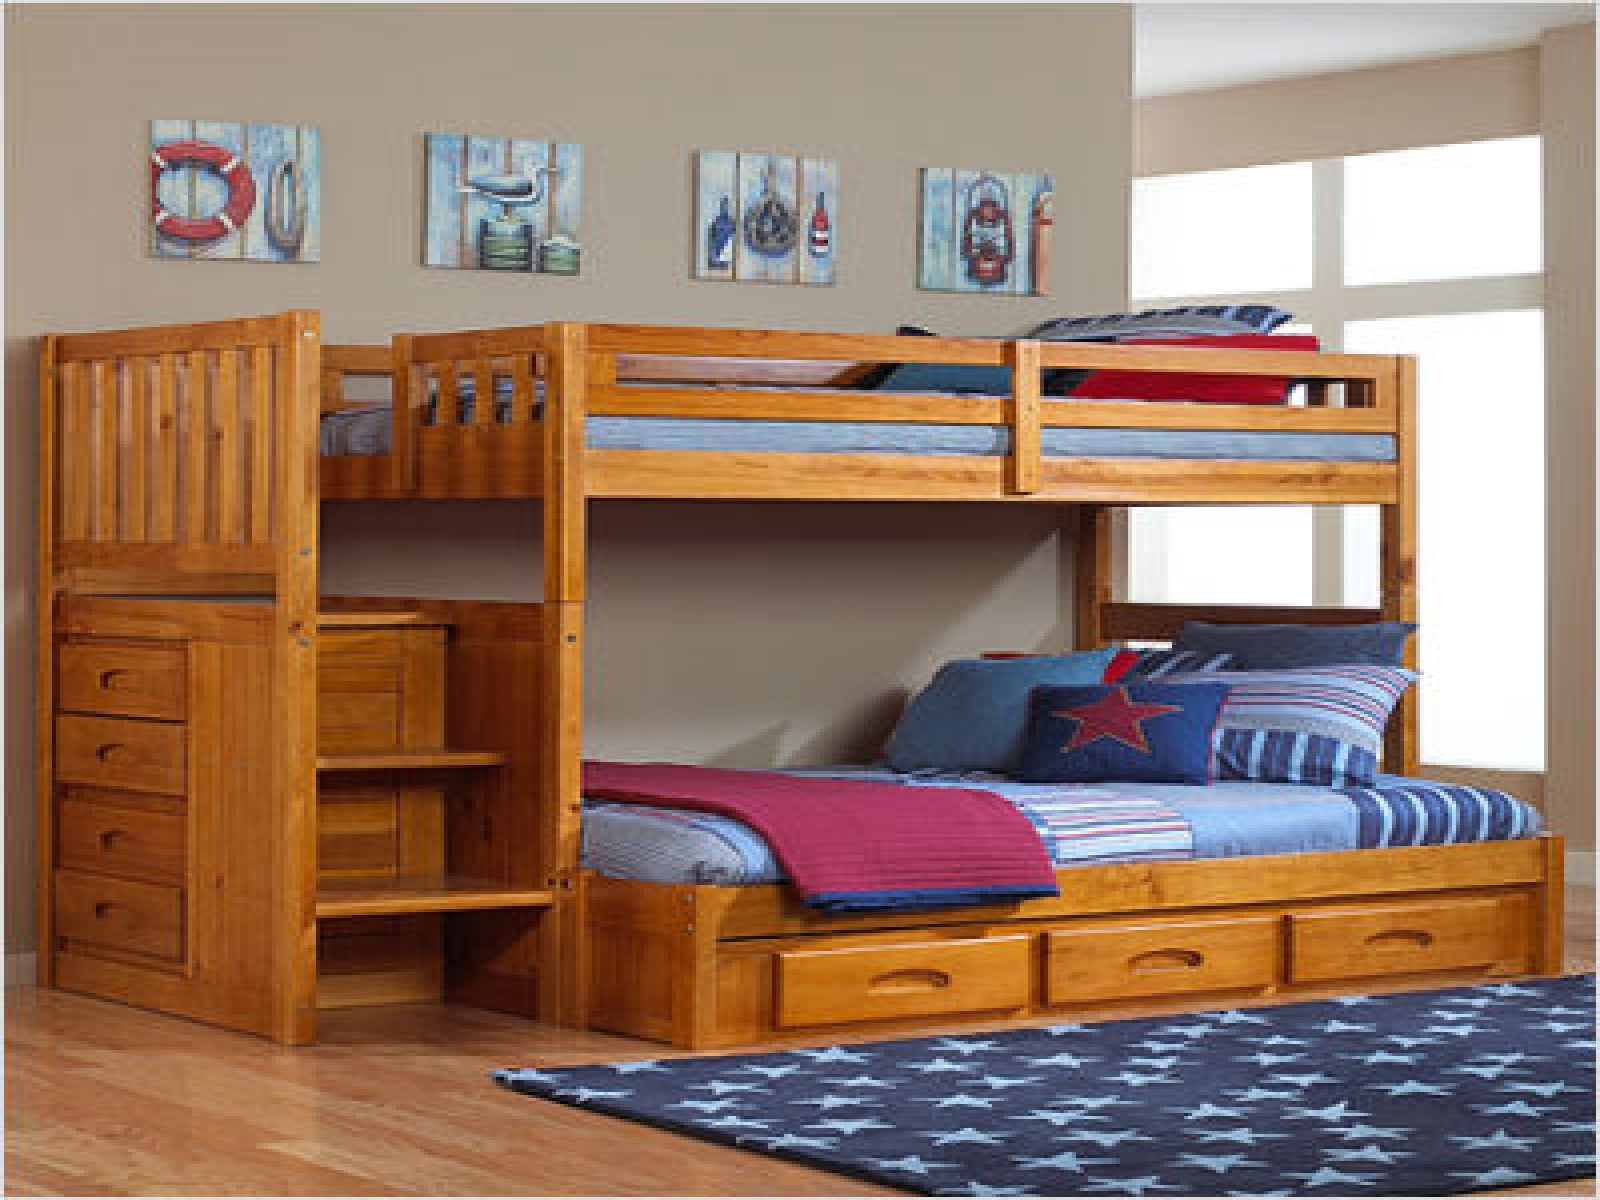 Solid wood bedroom furniture for kids | Hawk Haven